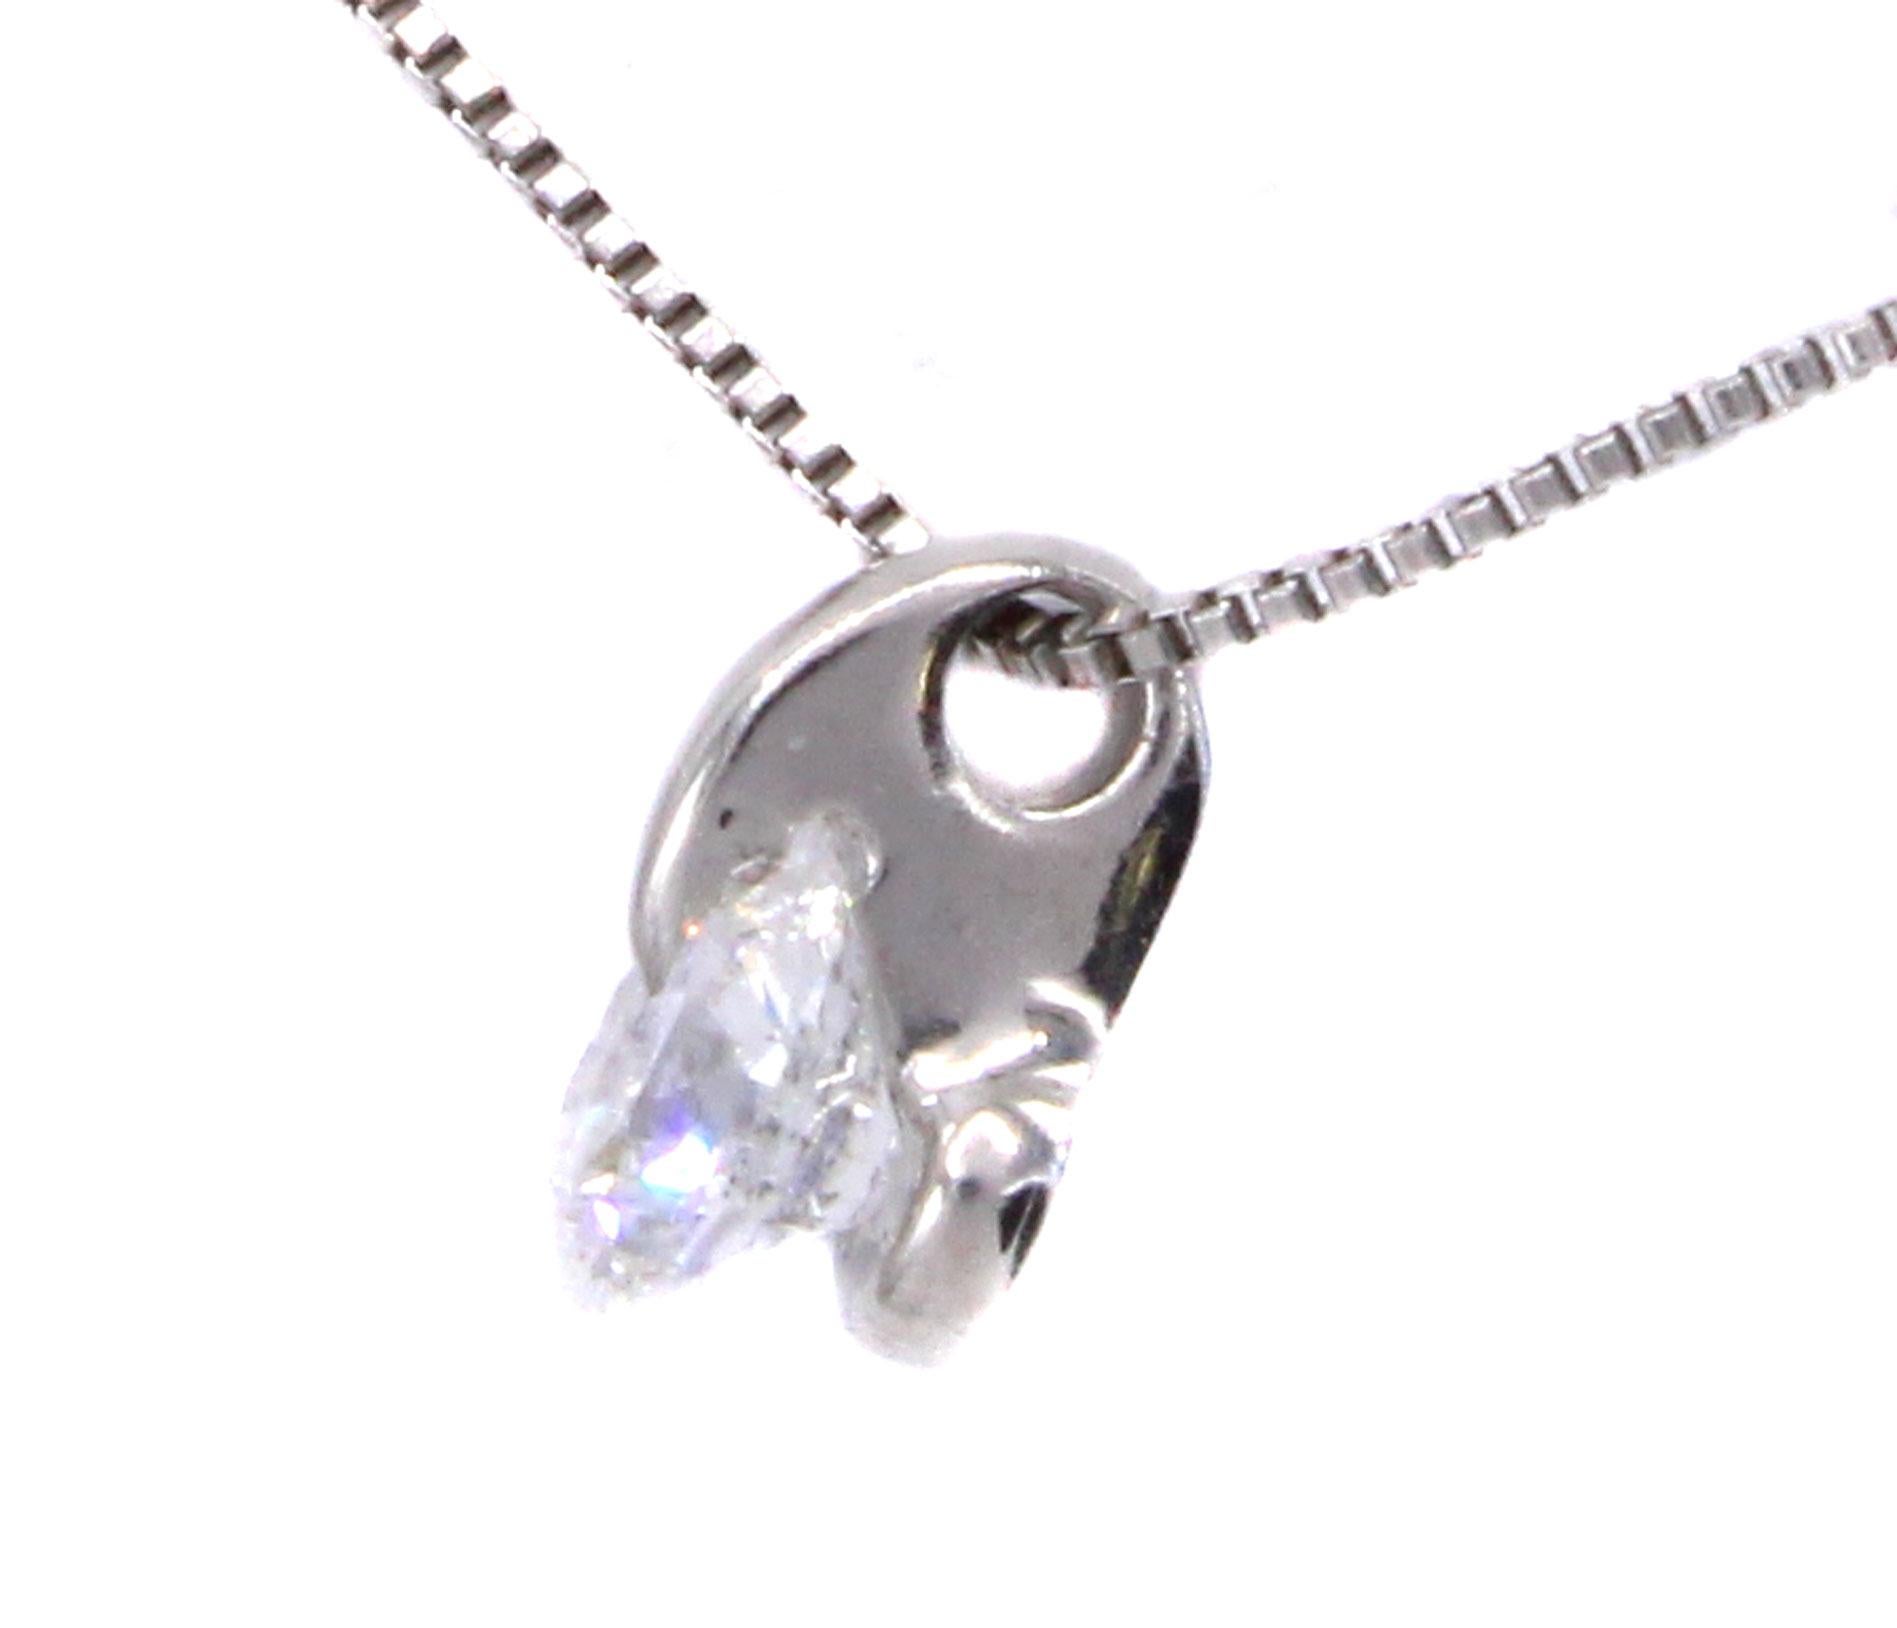 Un diamant rond de taille brillant, extrêmement blanc et brillant, est serti de manière unique dans ce collier pendentif en platine fabriqué à la main. Avec une griffe incurvée en platine s'étendant jusqu'à la table du diamant qui est solidement